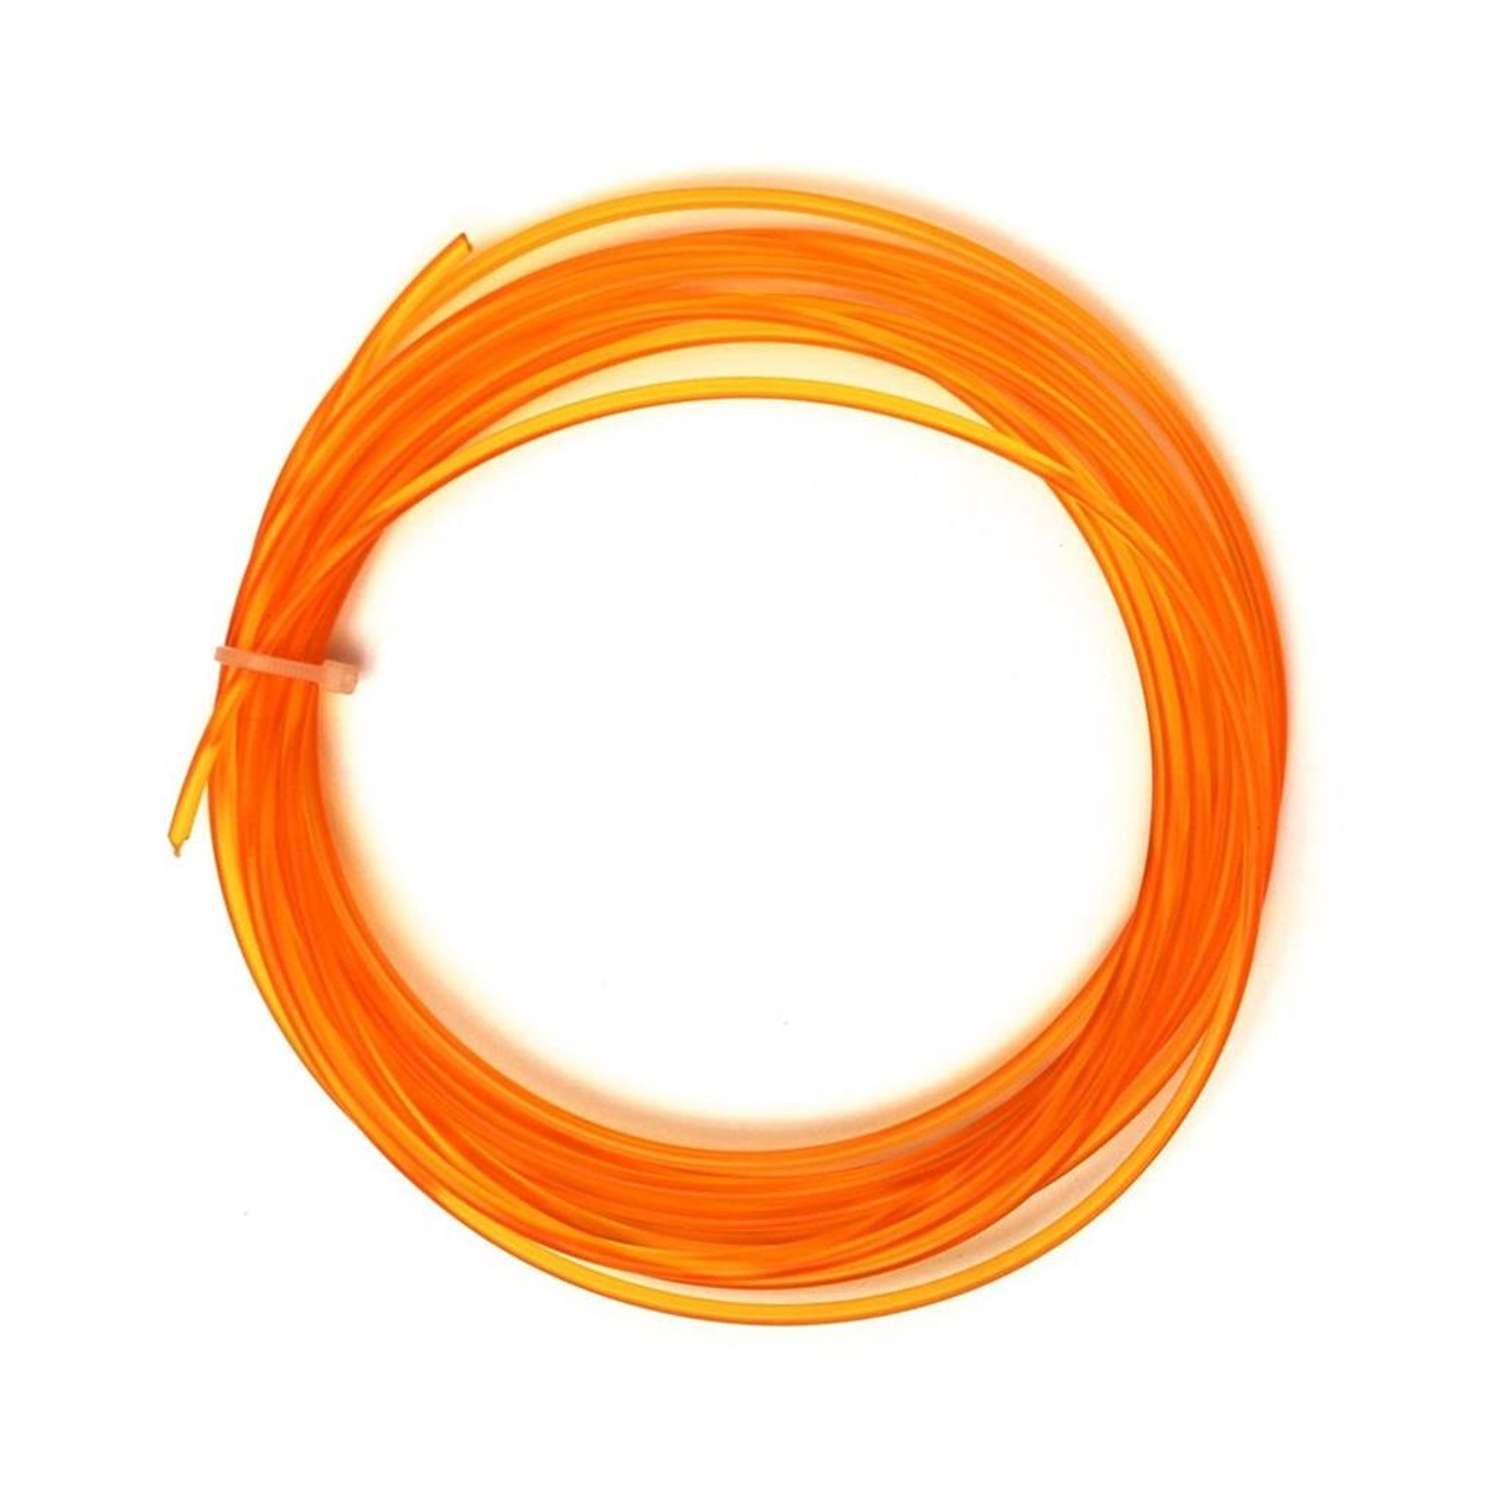 Пластик для 3D ручек Uniglodis Оранжевый прозрачный 5м - фото 1